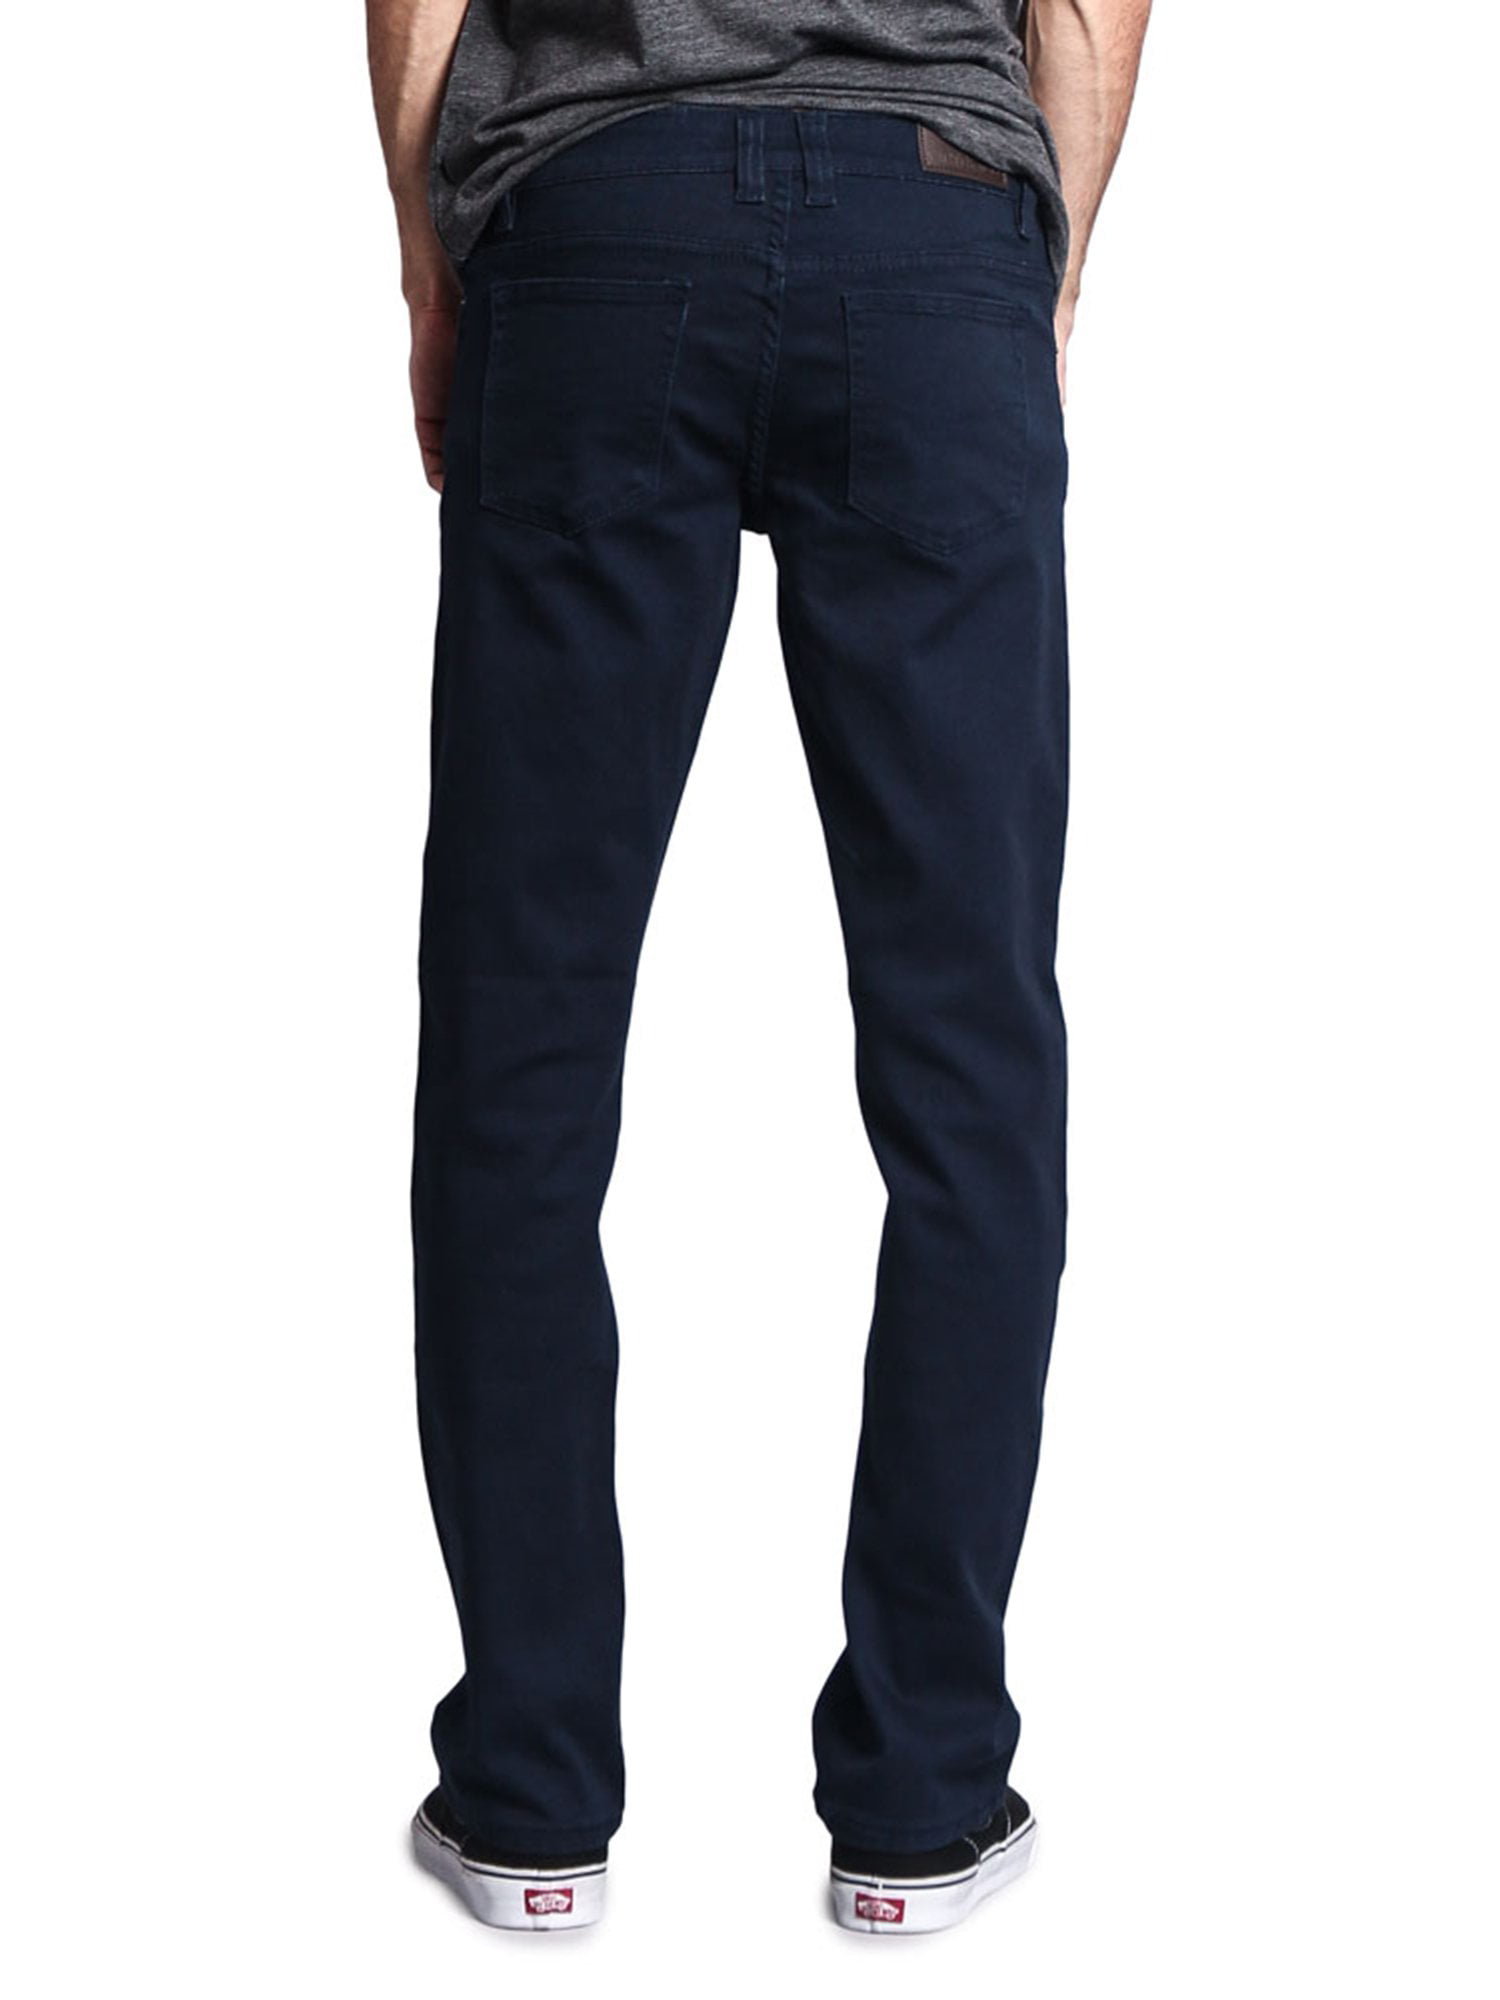 Victorious Men's Slim Fit Colored Denim Jeans Stretch Pants GS21